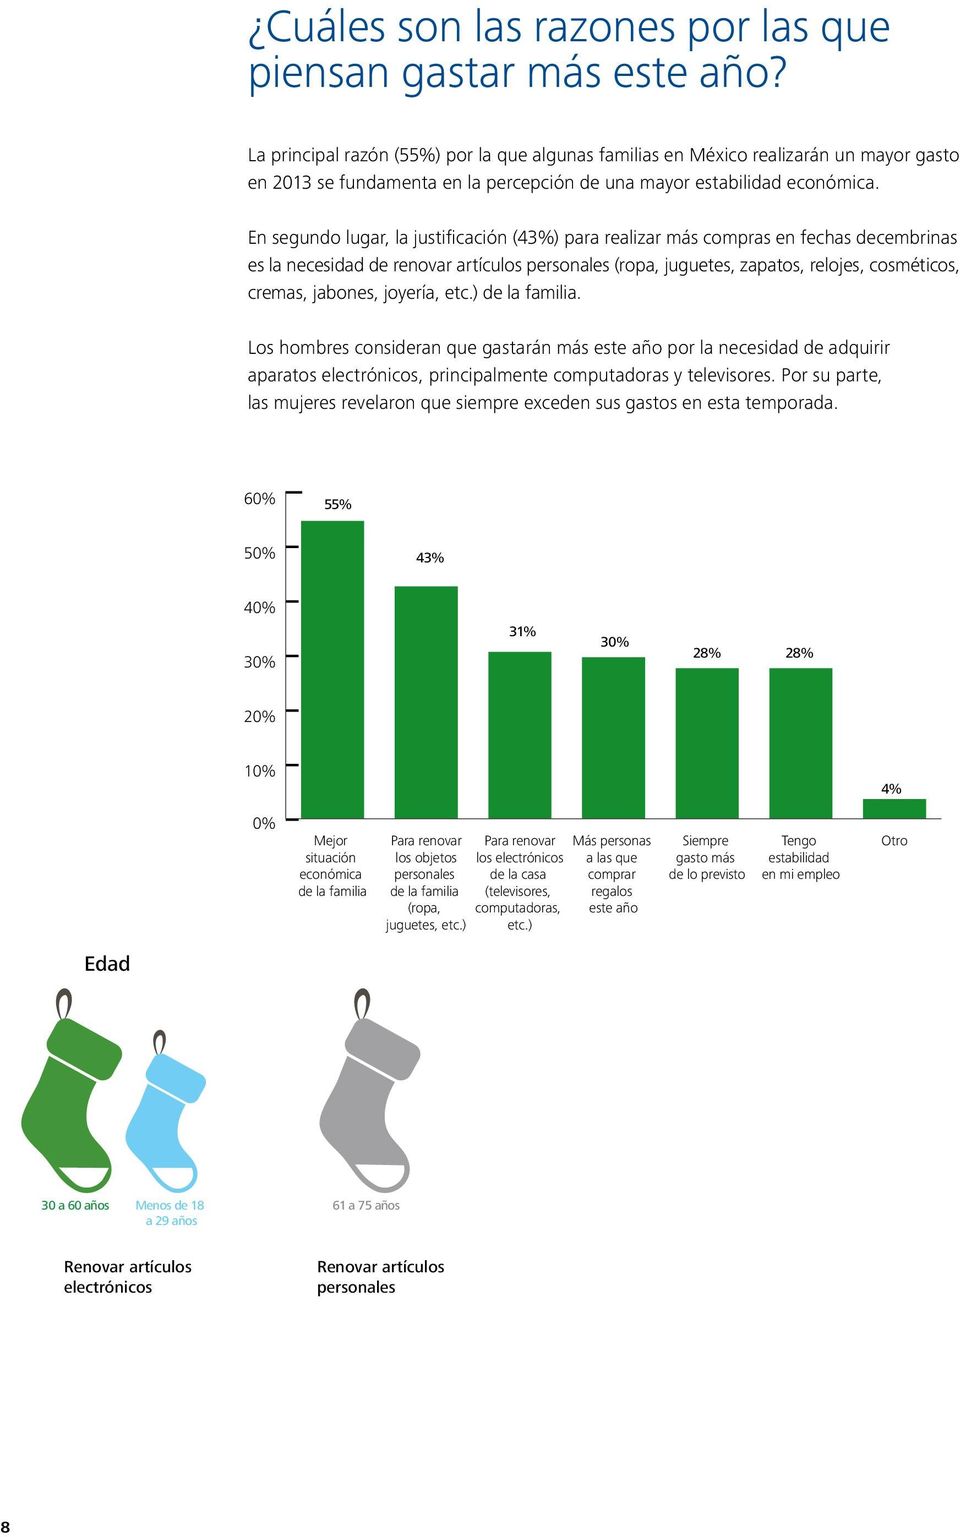 En segundo lugar, la justificación (43%) para realizar más compras en fechas decembrinas es la necesidad de renovar artículos personales (ropa, juguetes, zapatos, relojes, cosméticos, cremas,